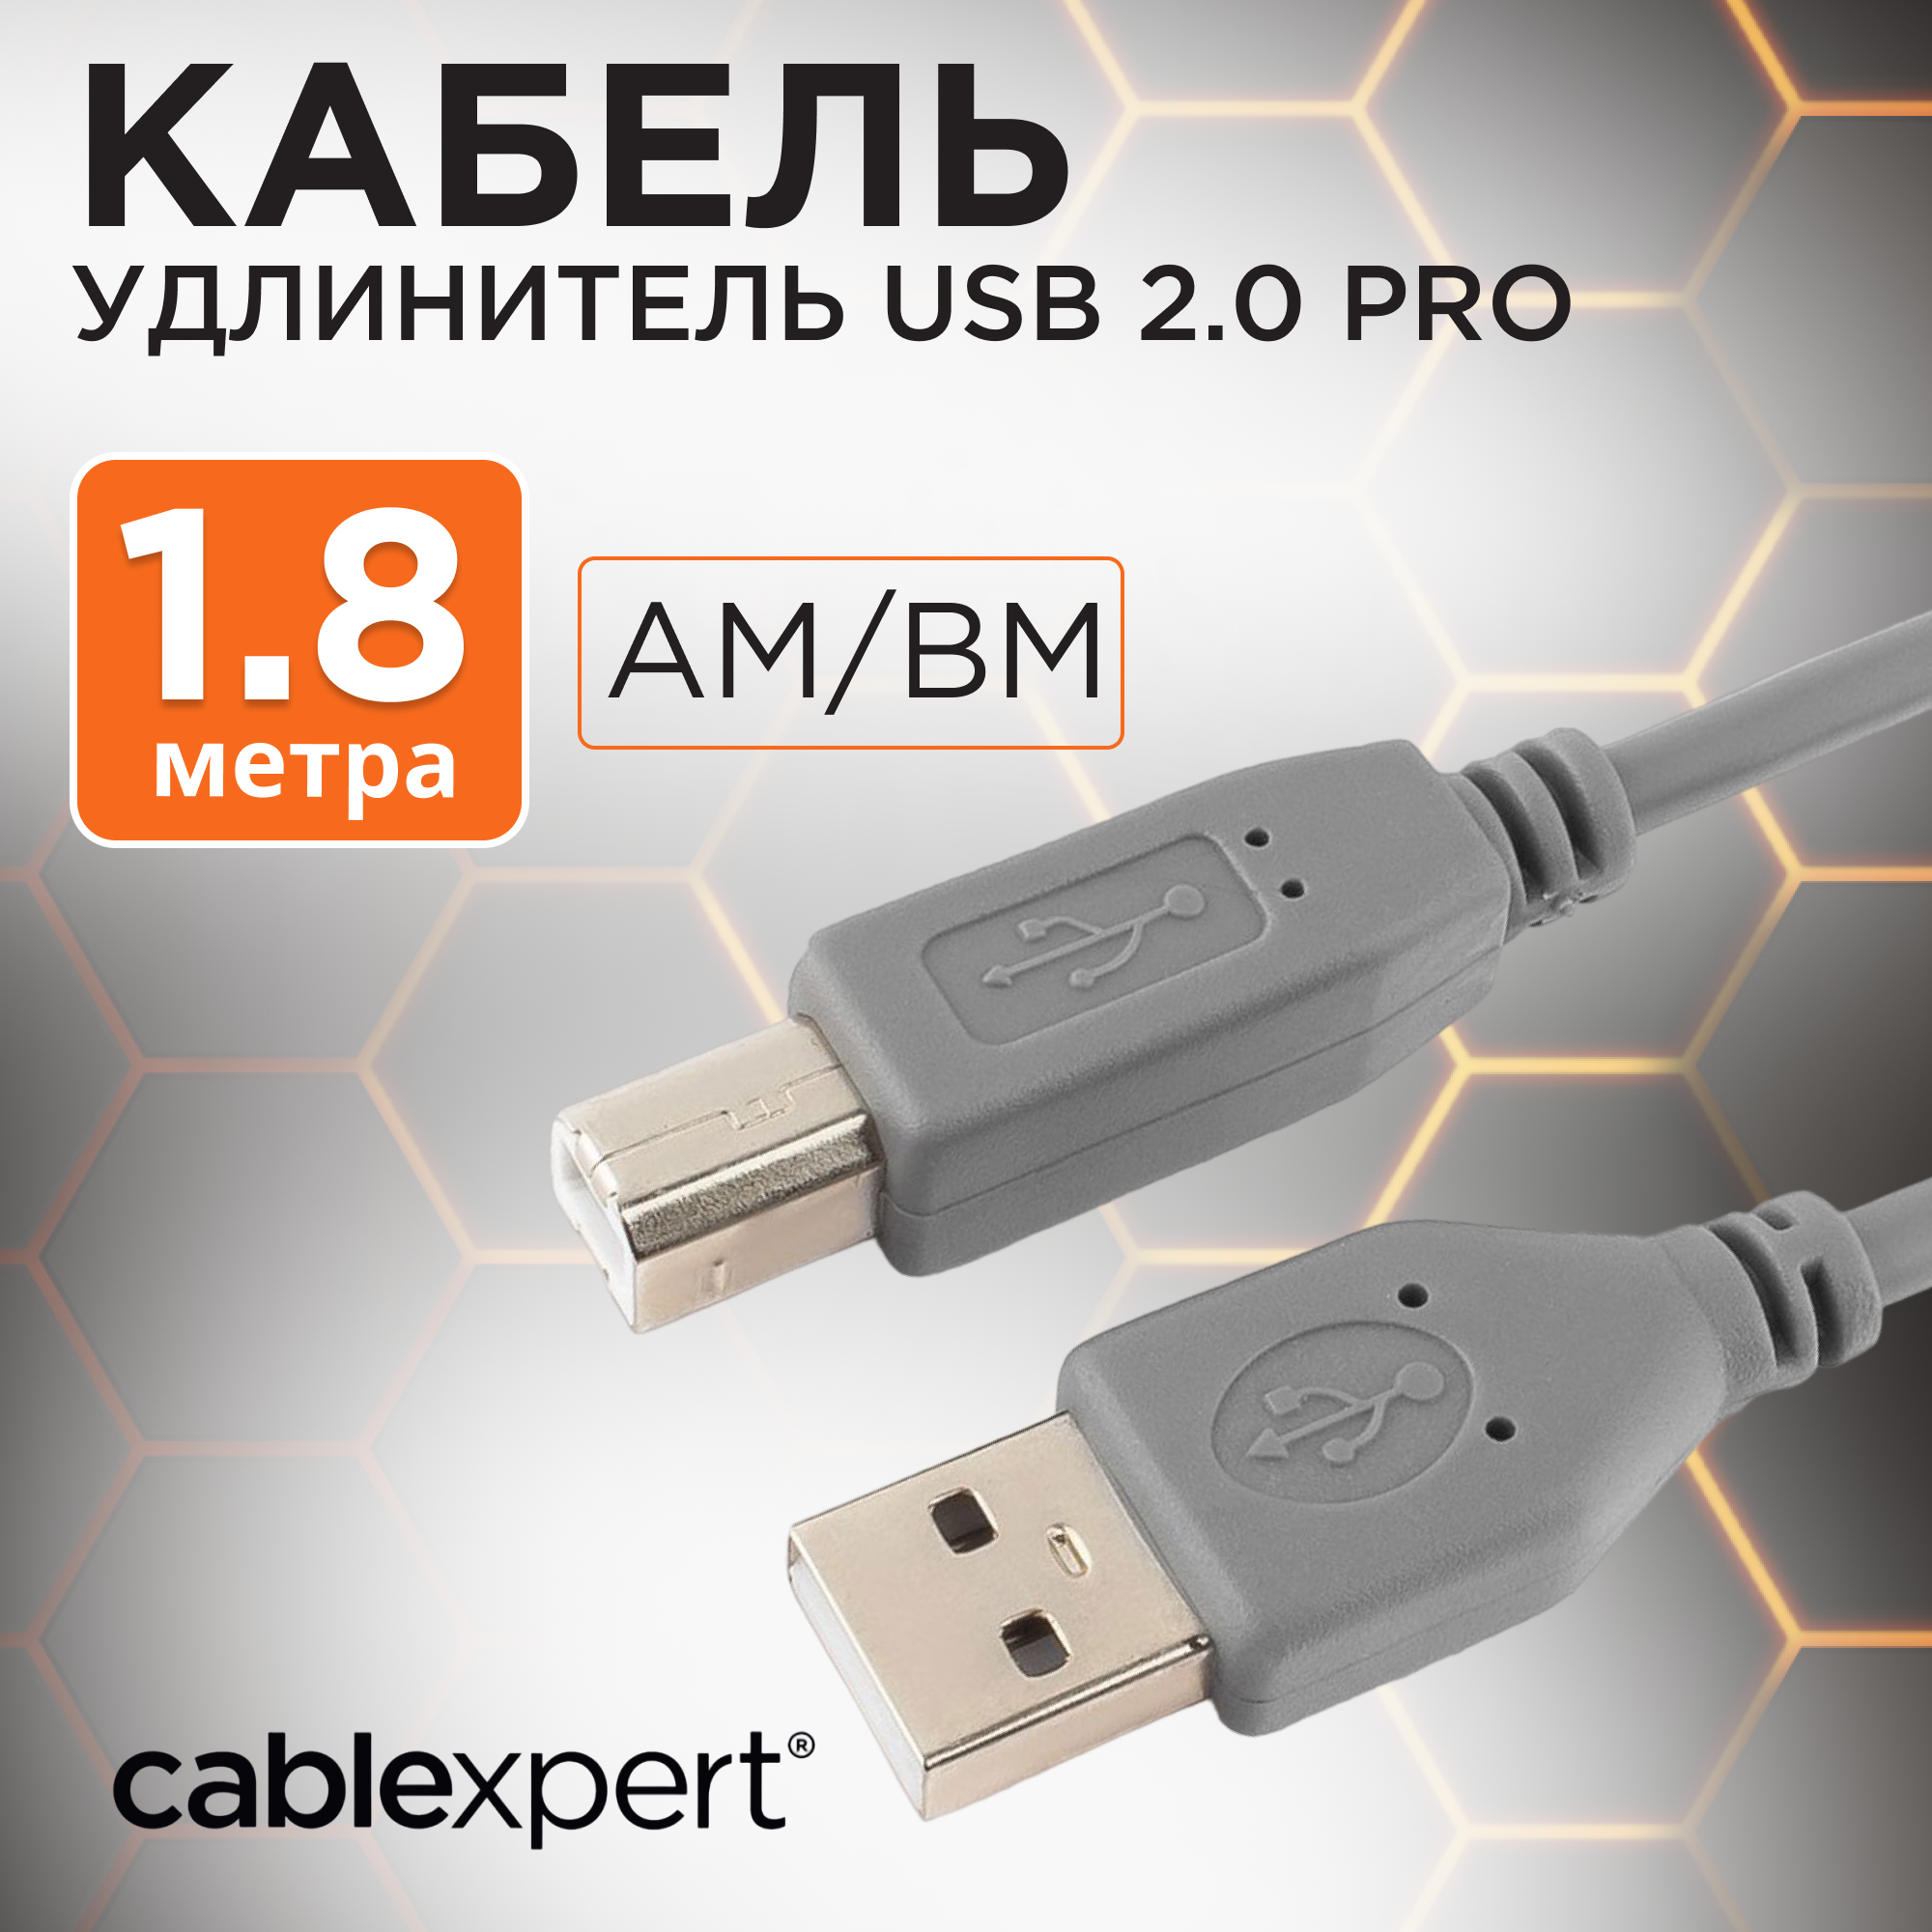 Кабель USB 2.0 Pro, AM/BM, 1,8 метра, экранирование для снижения помех, Cablexpert